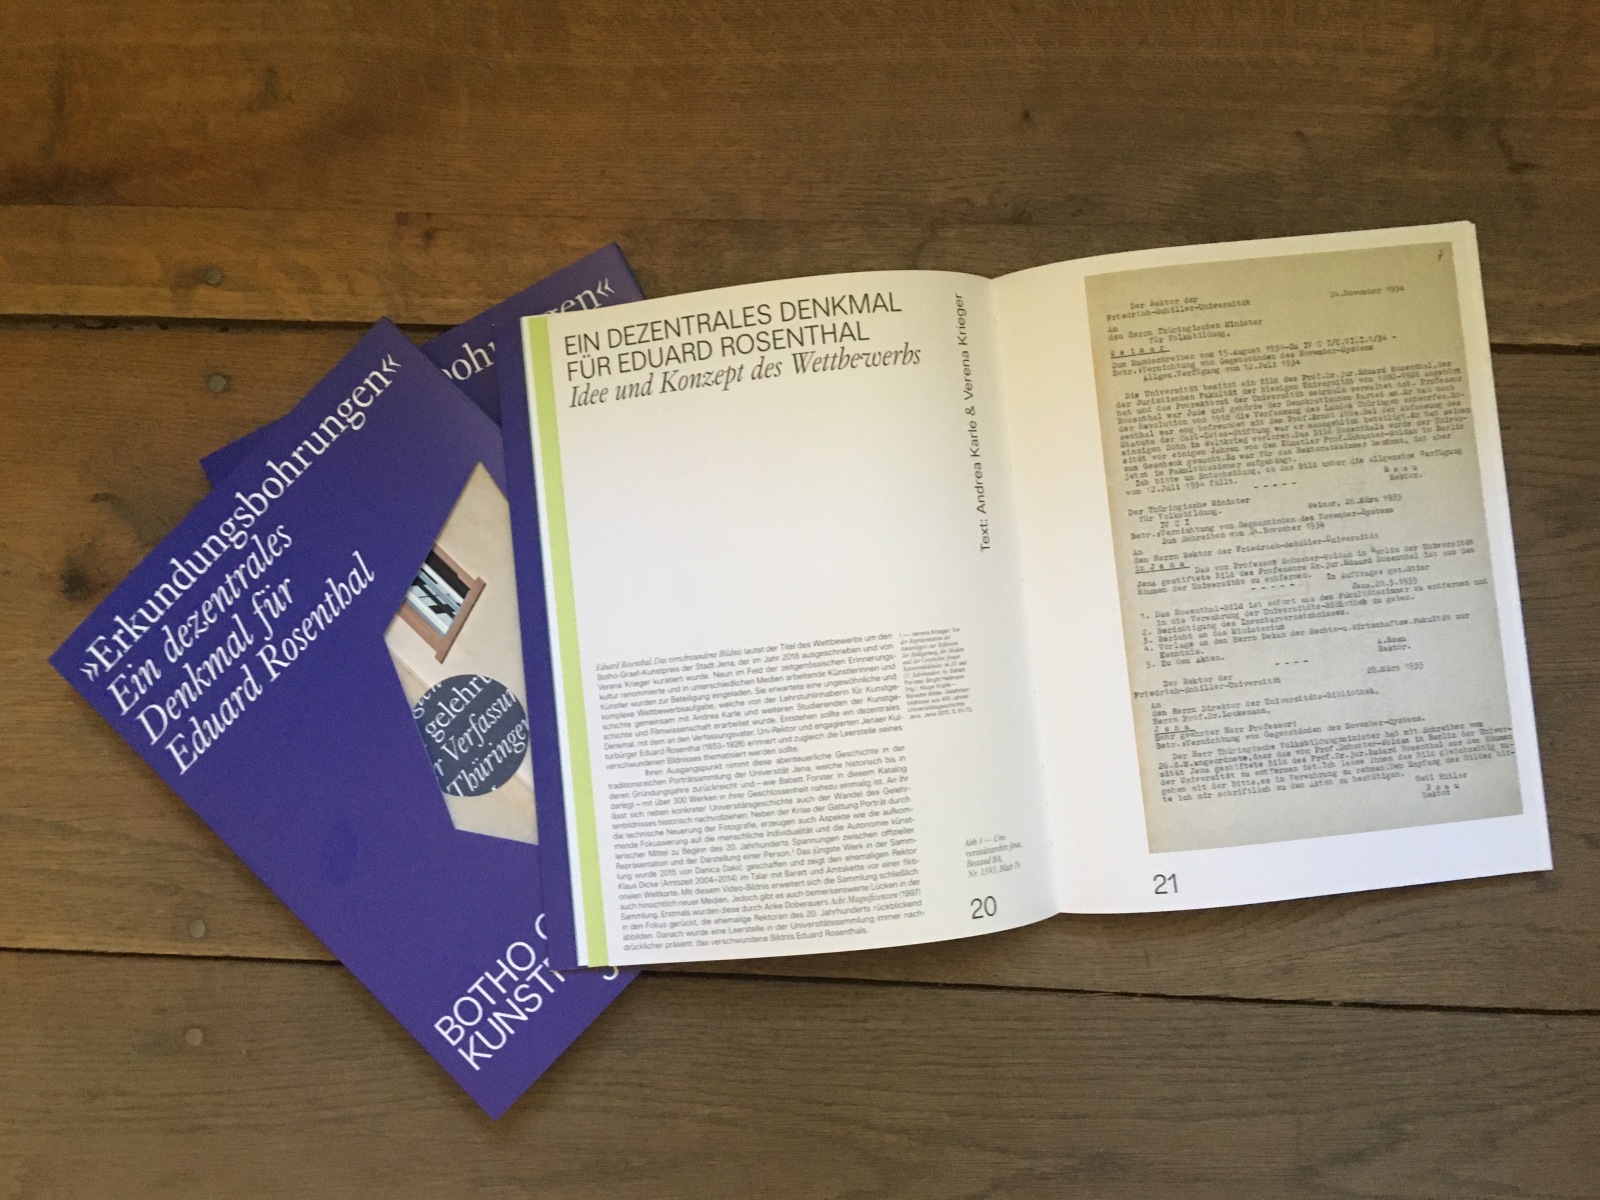 Drei Exemplare des Katalogs, ein Buch in dunkelblauem Umschlag mit Stanzungen durch die Buchdecke, liegen aufgeschlagen auf einem Holzboden.